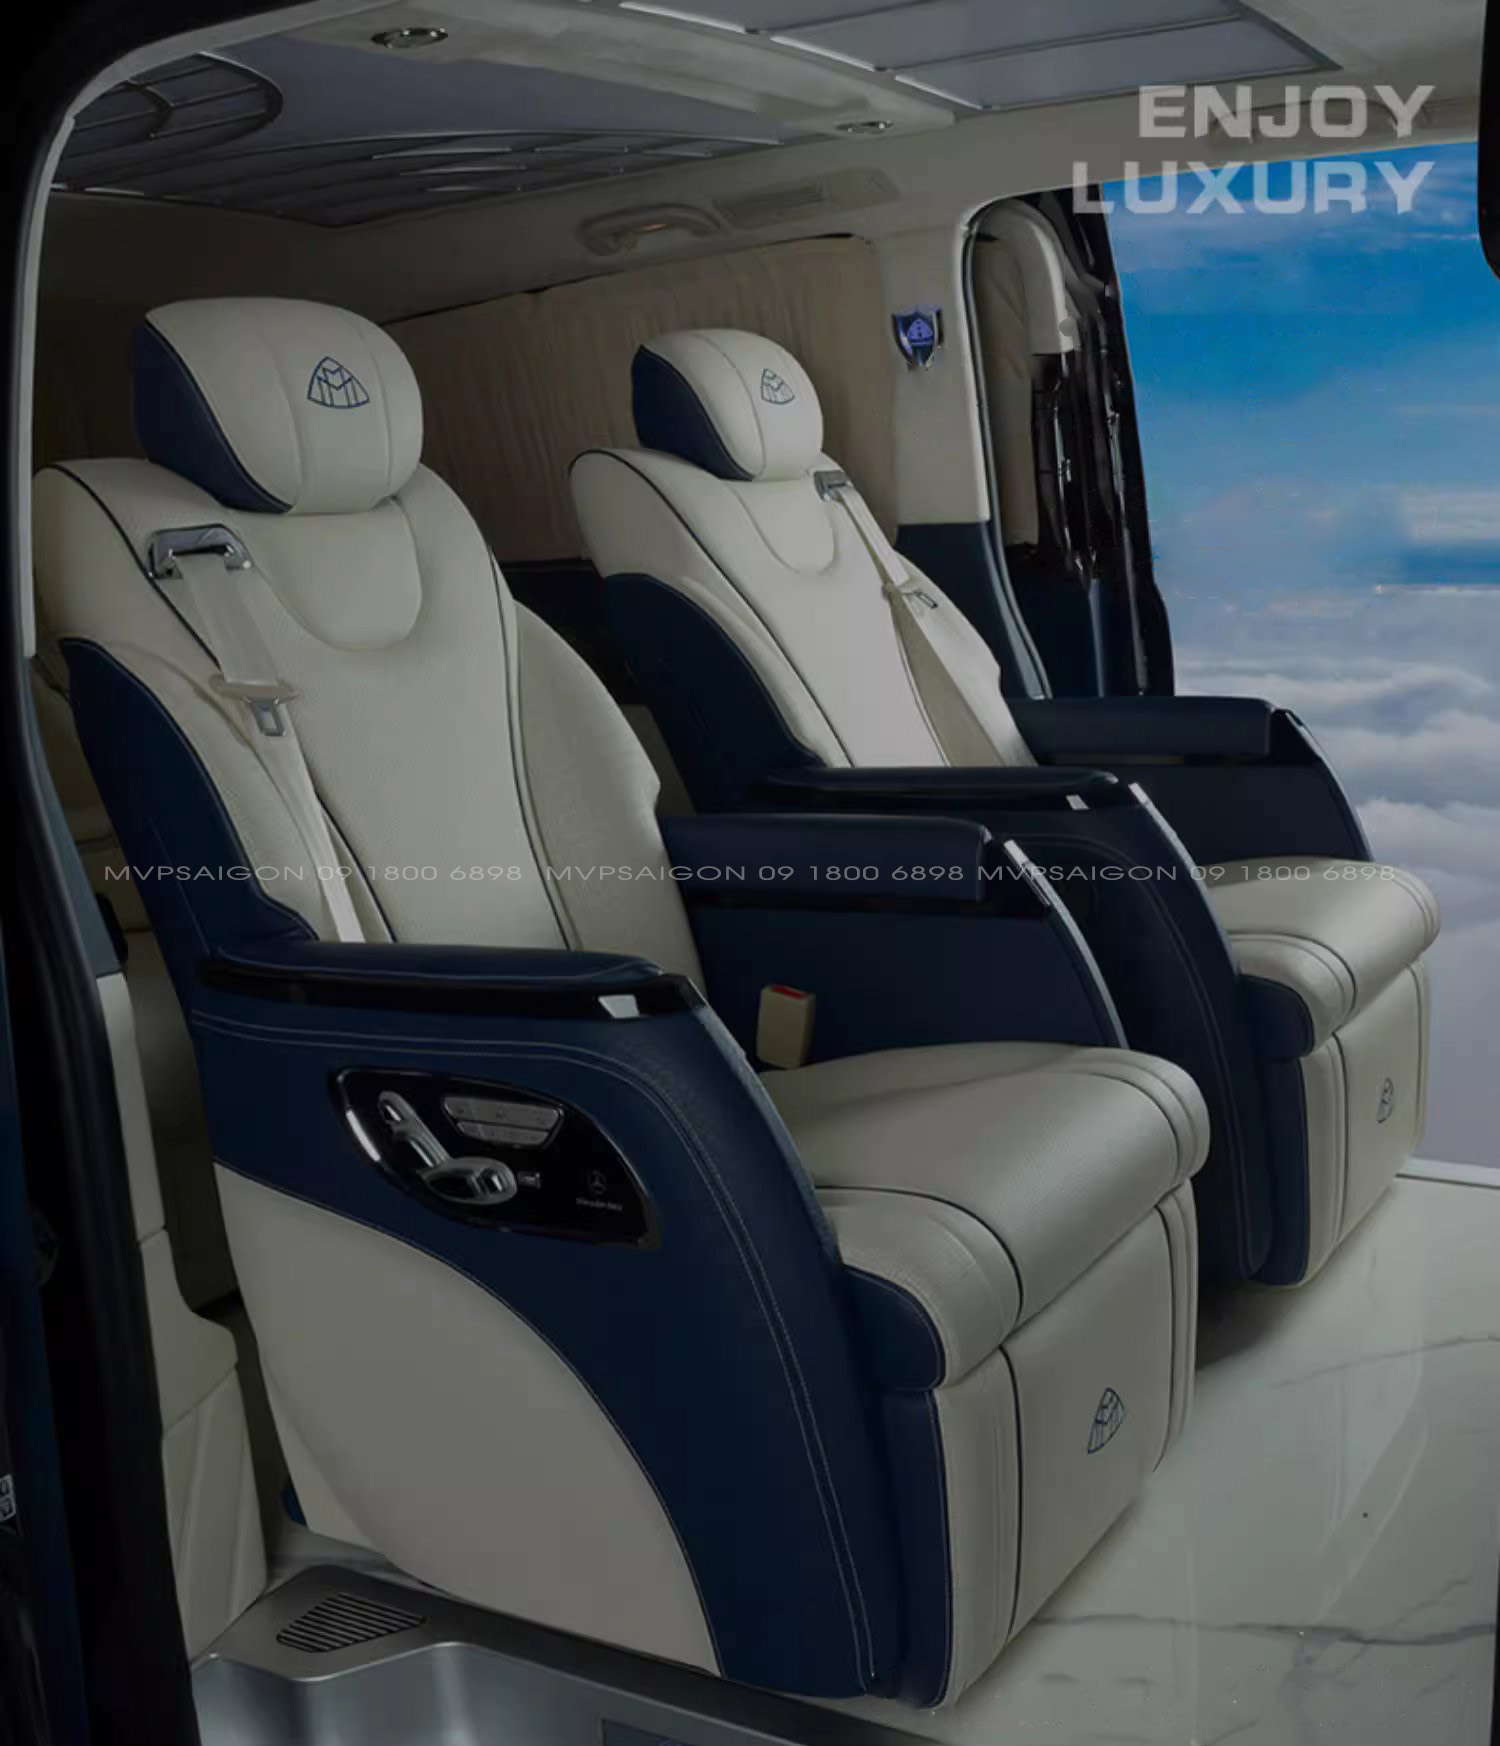 Nâng cấp ghế Limousine Dreamer cho xe Benz V-class V250